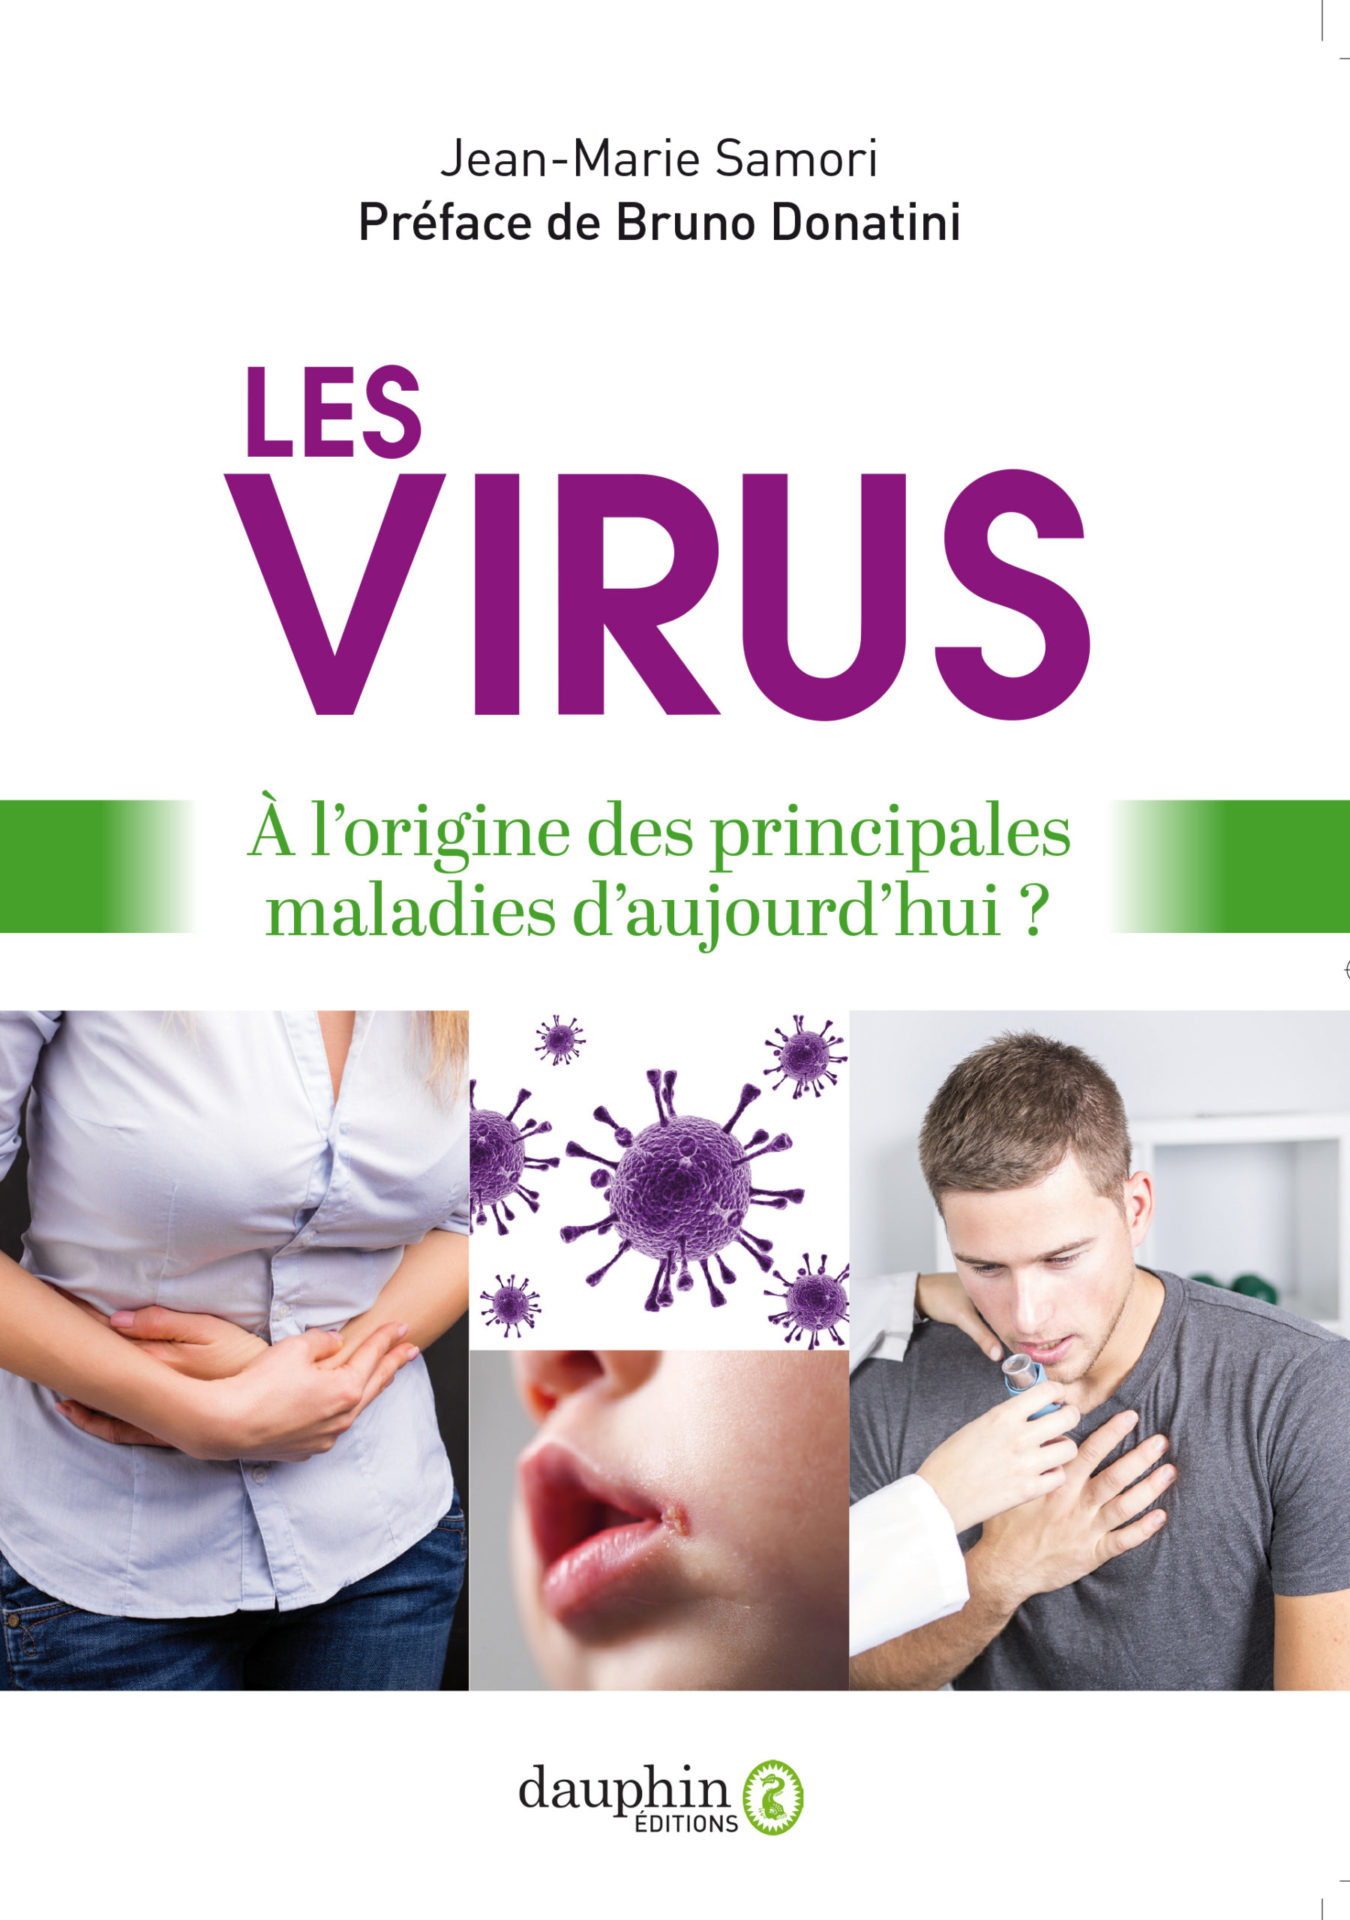 Ici Paris virus 2020